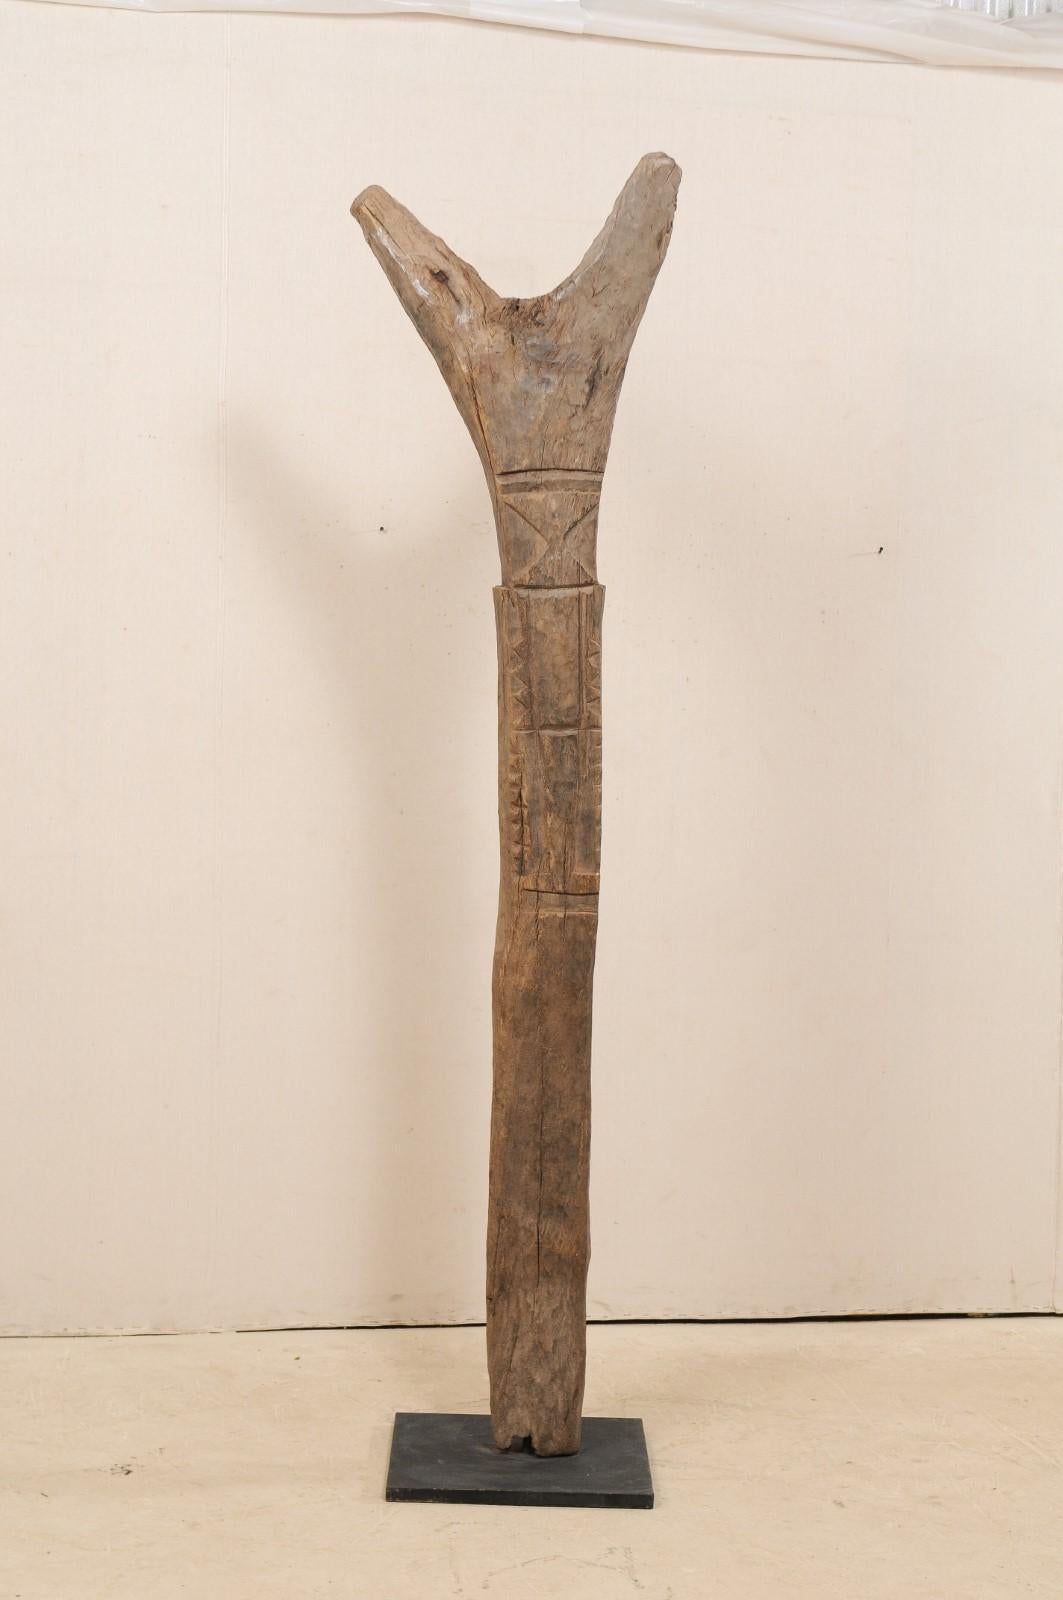 Poteau de soutien Toguna de la tribu Dogon du Mali, datant du début ou du milieu du 20e siècle, sur support métallique personnalisé. Cette fève en bois sculptée à la main en Afrique de l'Ouest était à l'origine utilisée pour soutenir le 